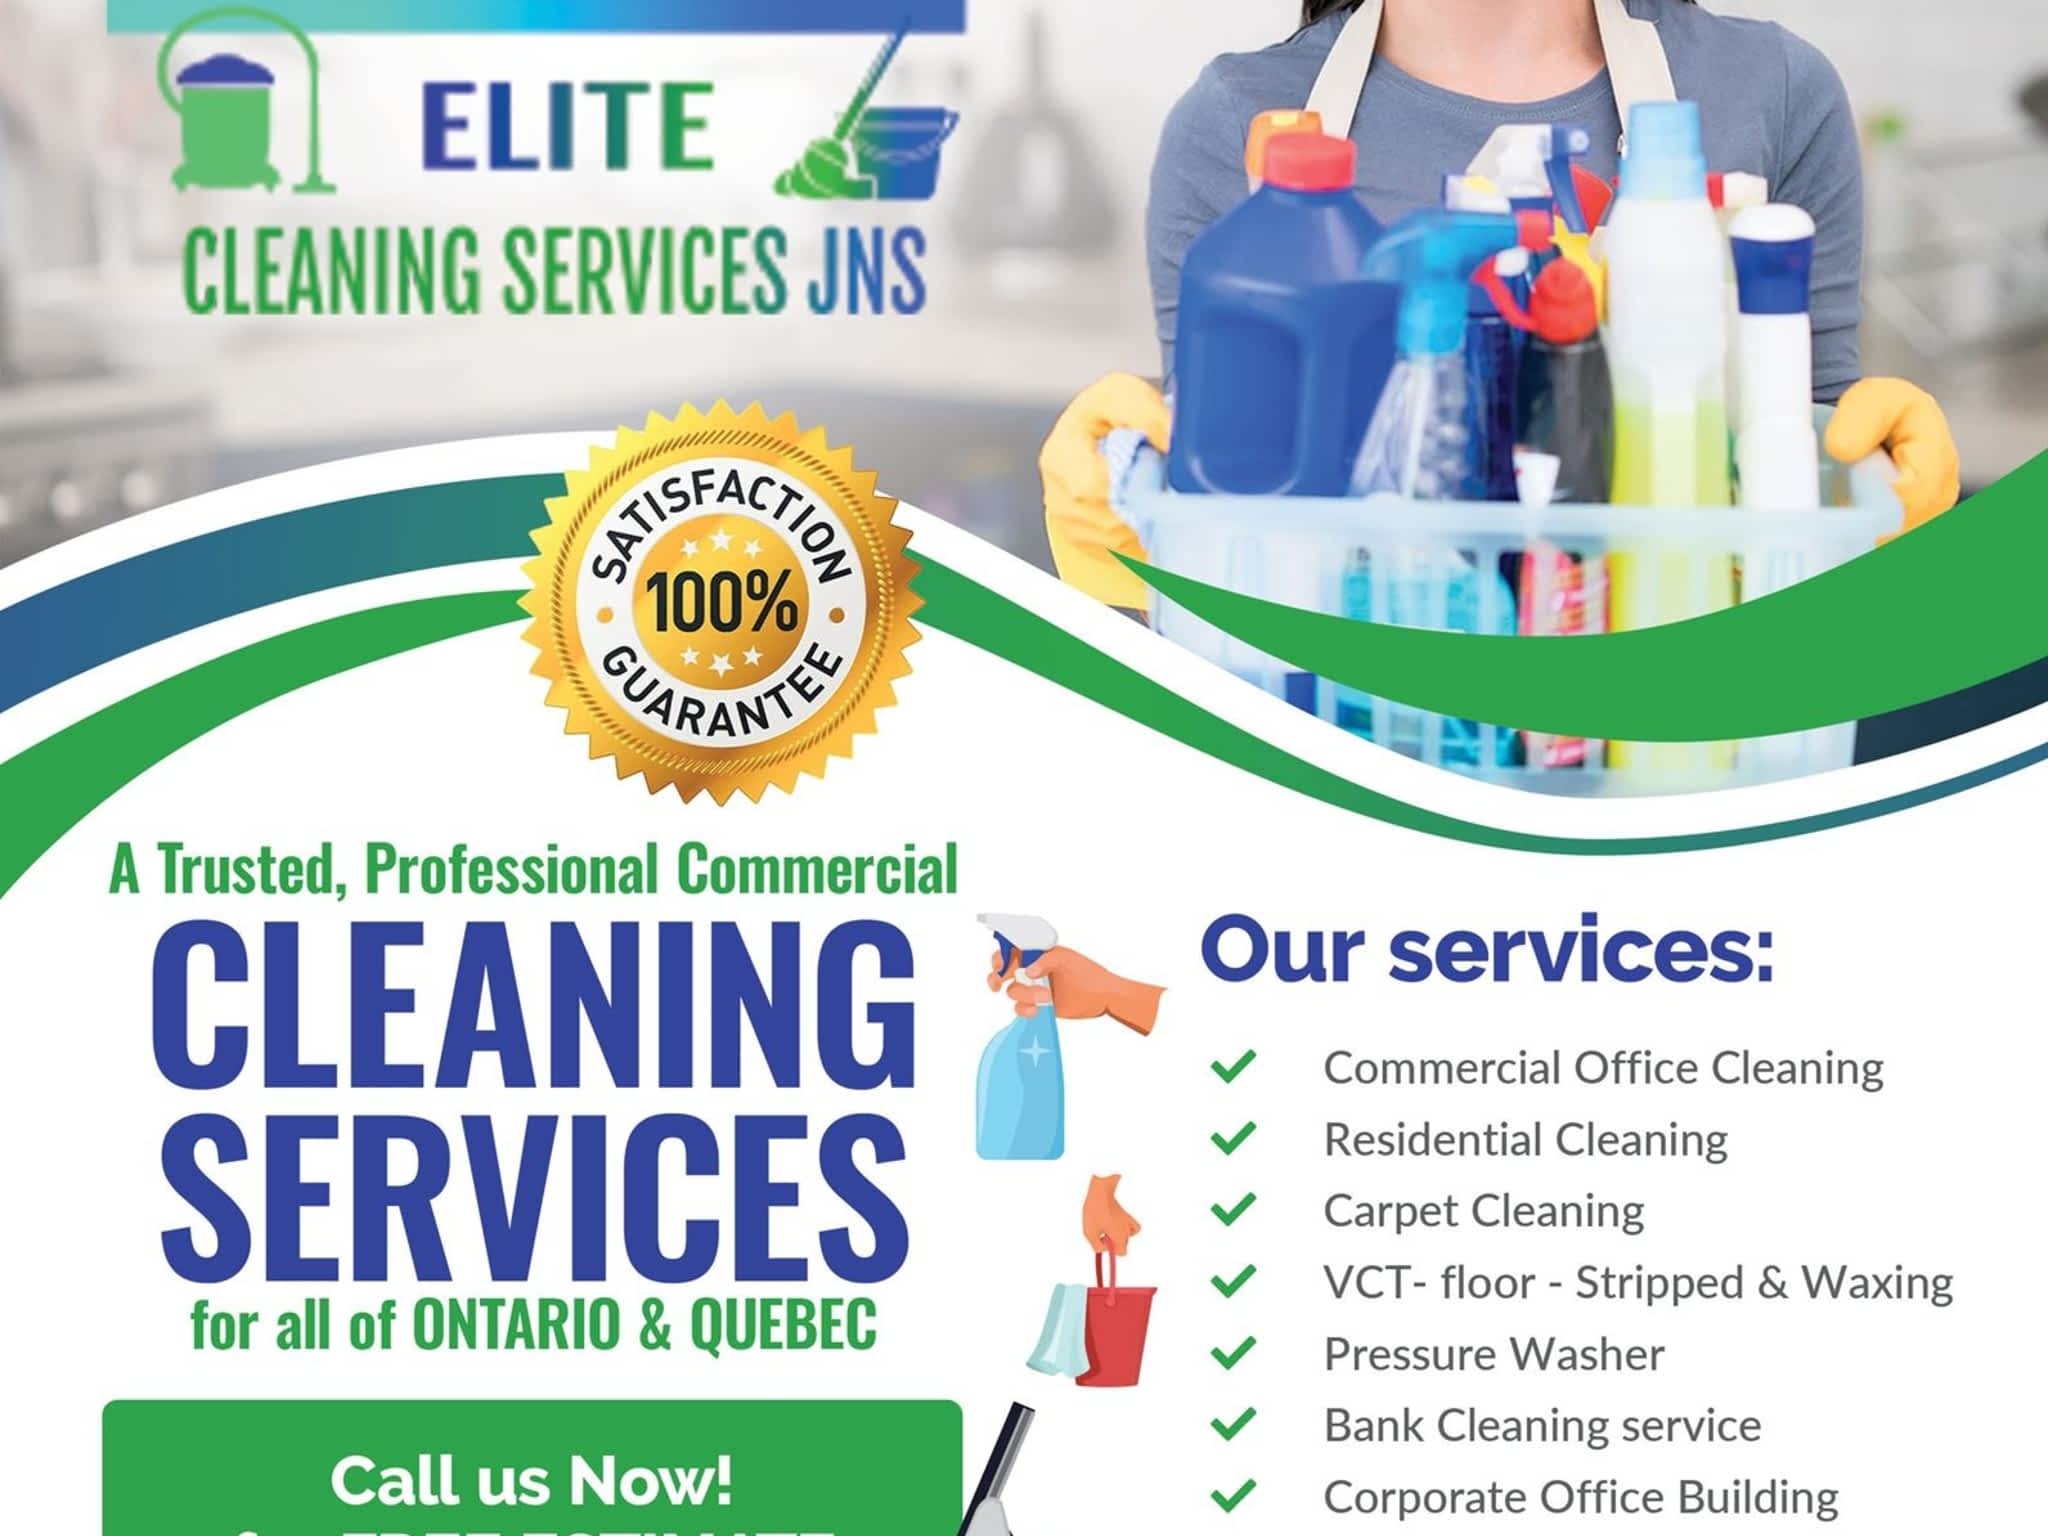 photo Élite Cleaning Services JNS